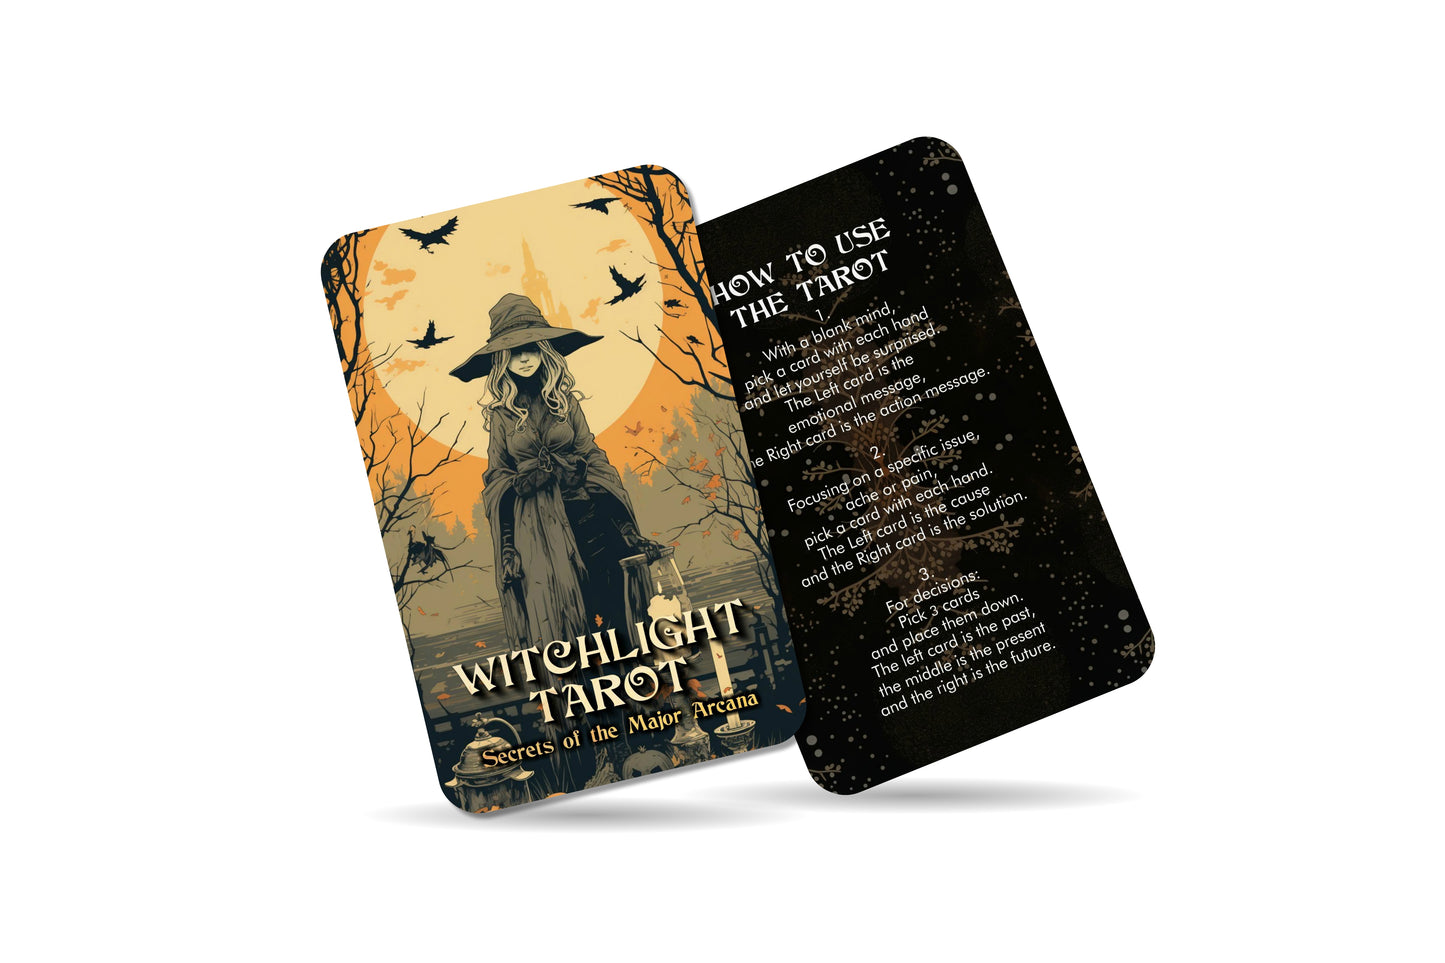 Witchlight Tarot - Secrets of the Major Arcana